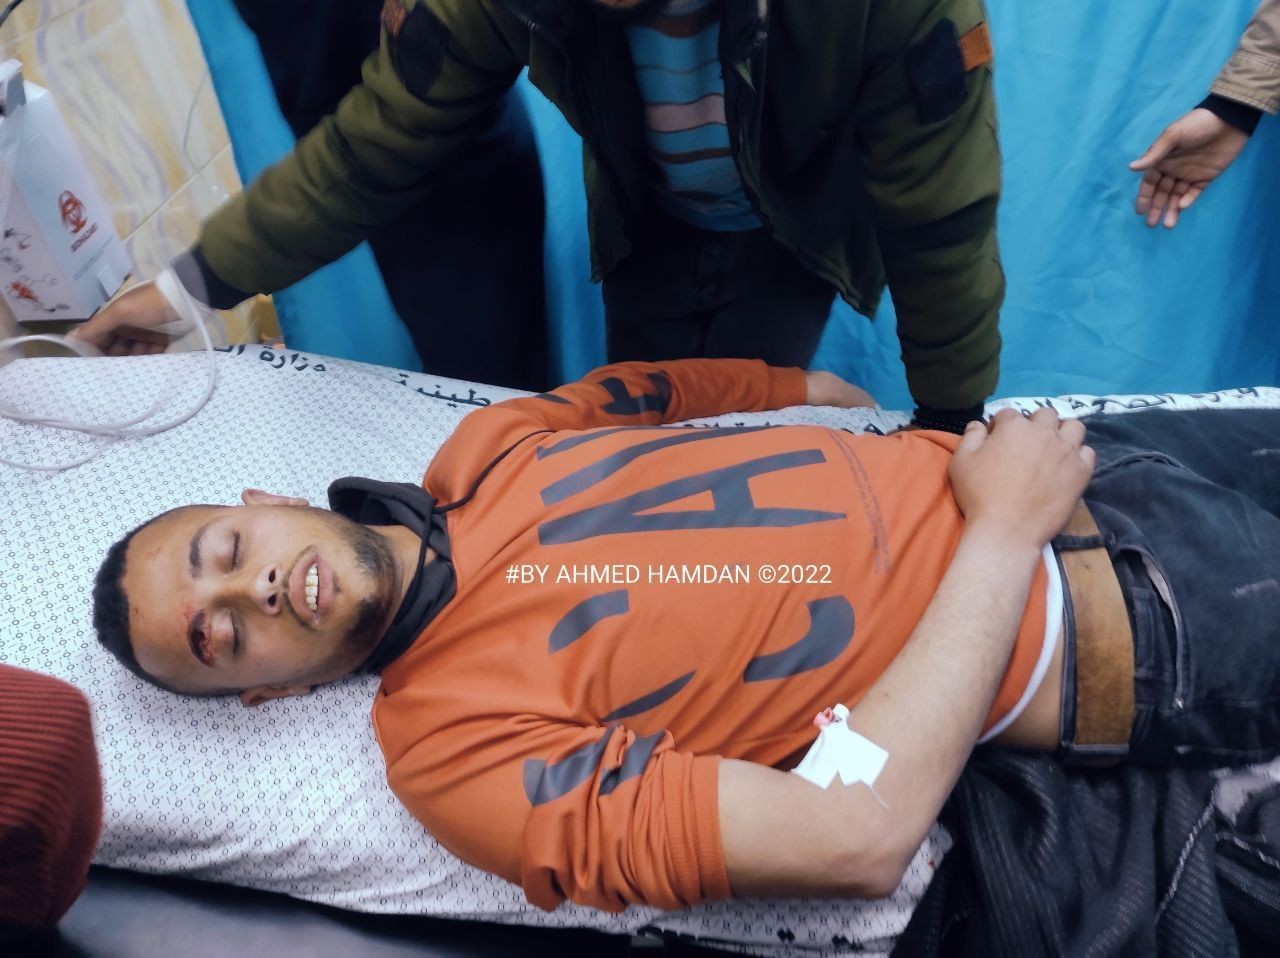 صورة لاحد المصابين في مستشفى بيت حانون بعد سقوط صاروخ بالقرب من السياج.jpg